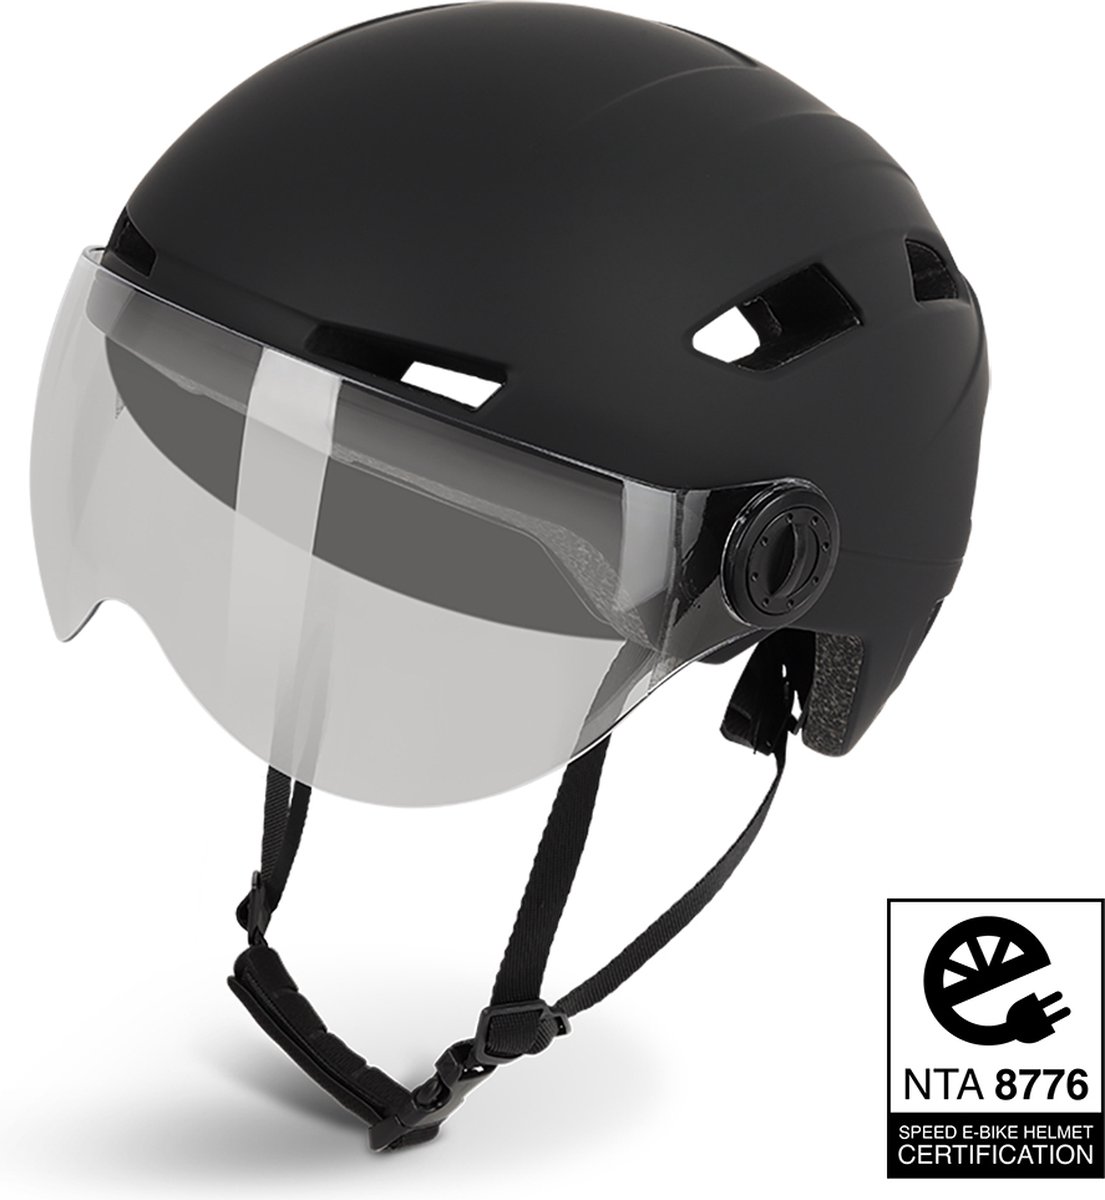 Lightyourbike ® ROADSTER - Speed Pedelec Helm met vizier & verlichting - NTA 8776 - Helm Snorscooter - Helm Speed Pedelec - Zwart - Maat L